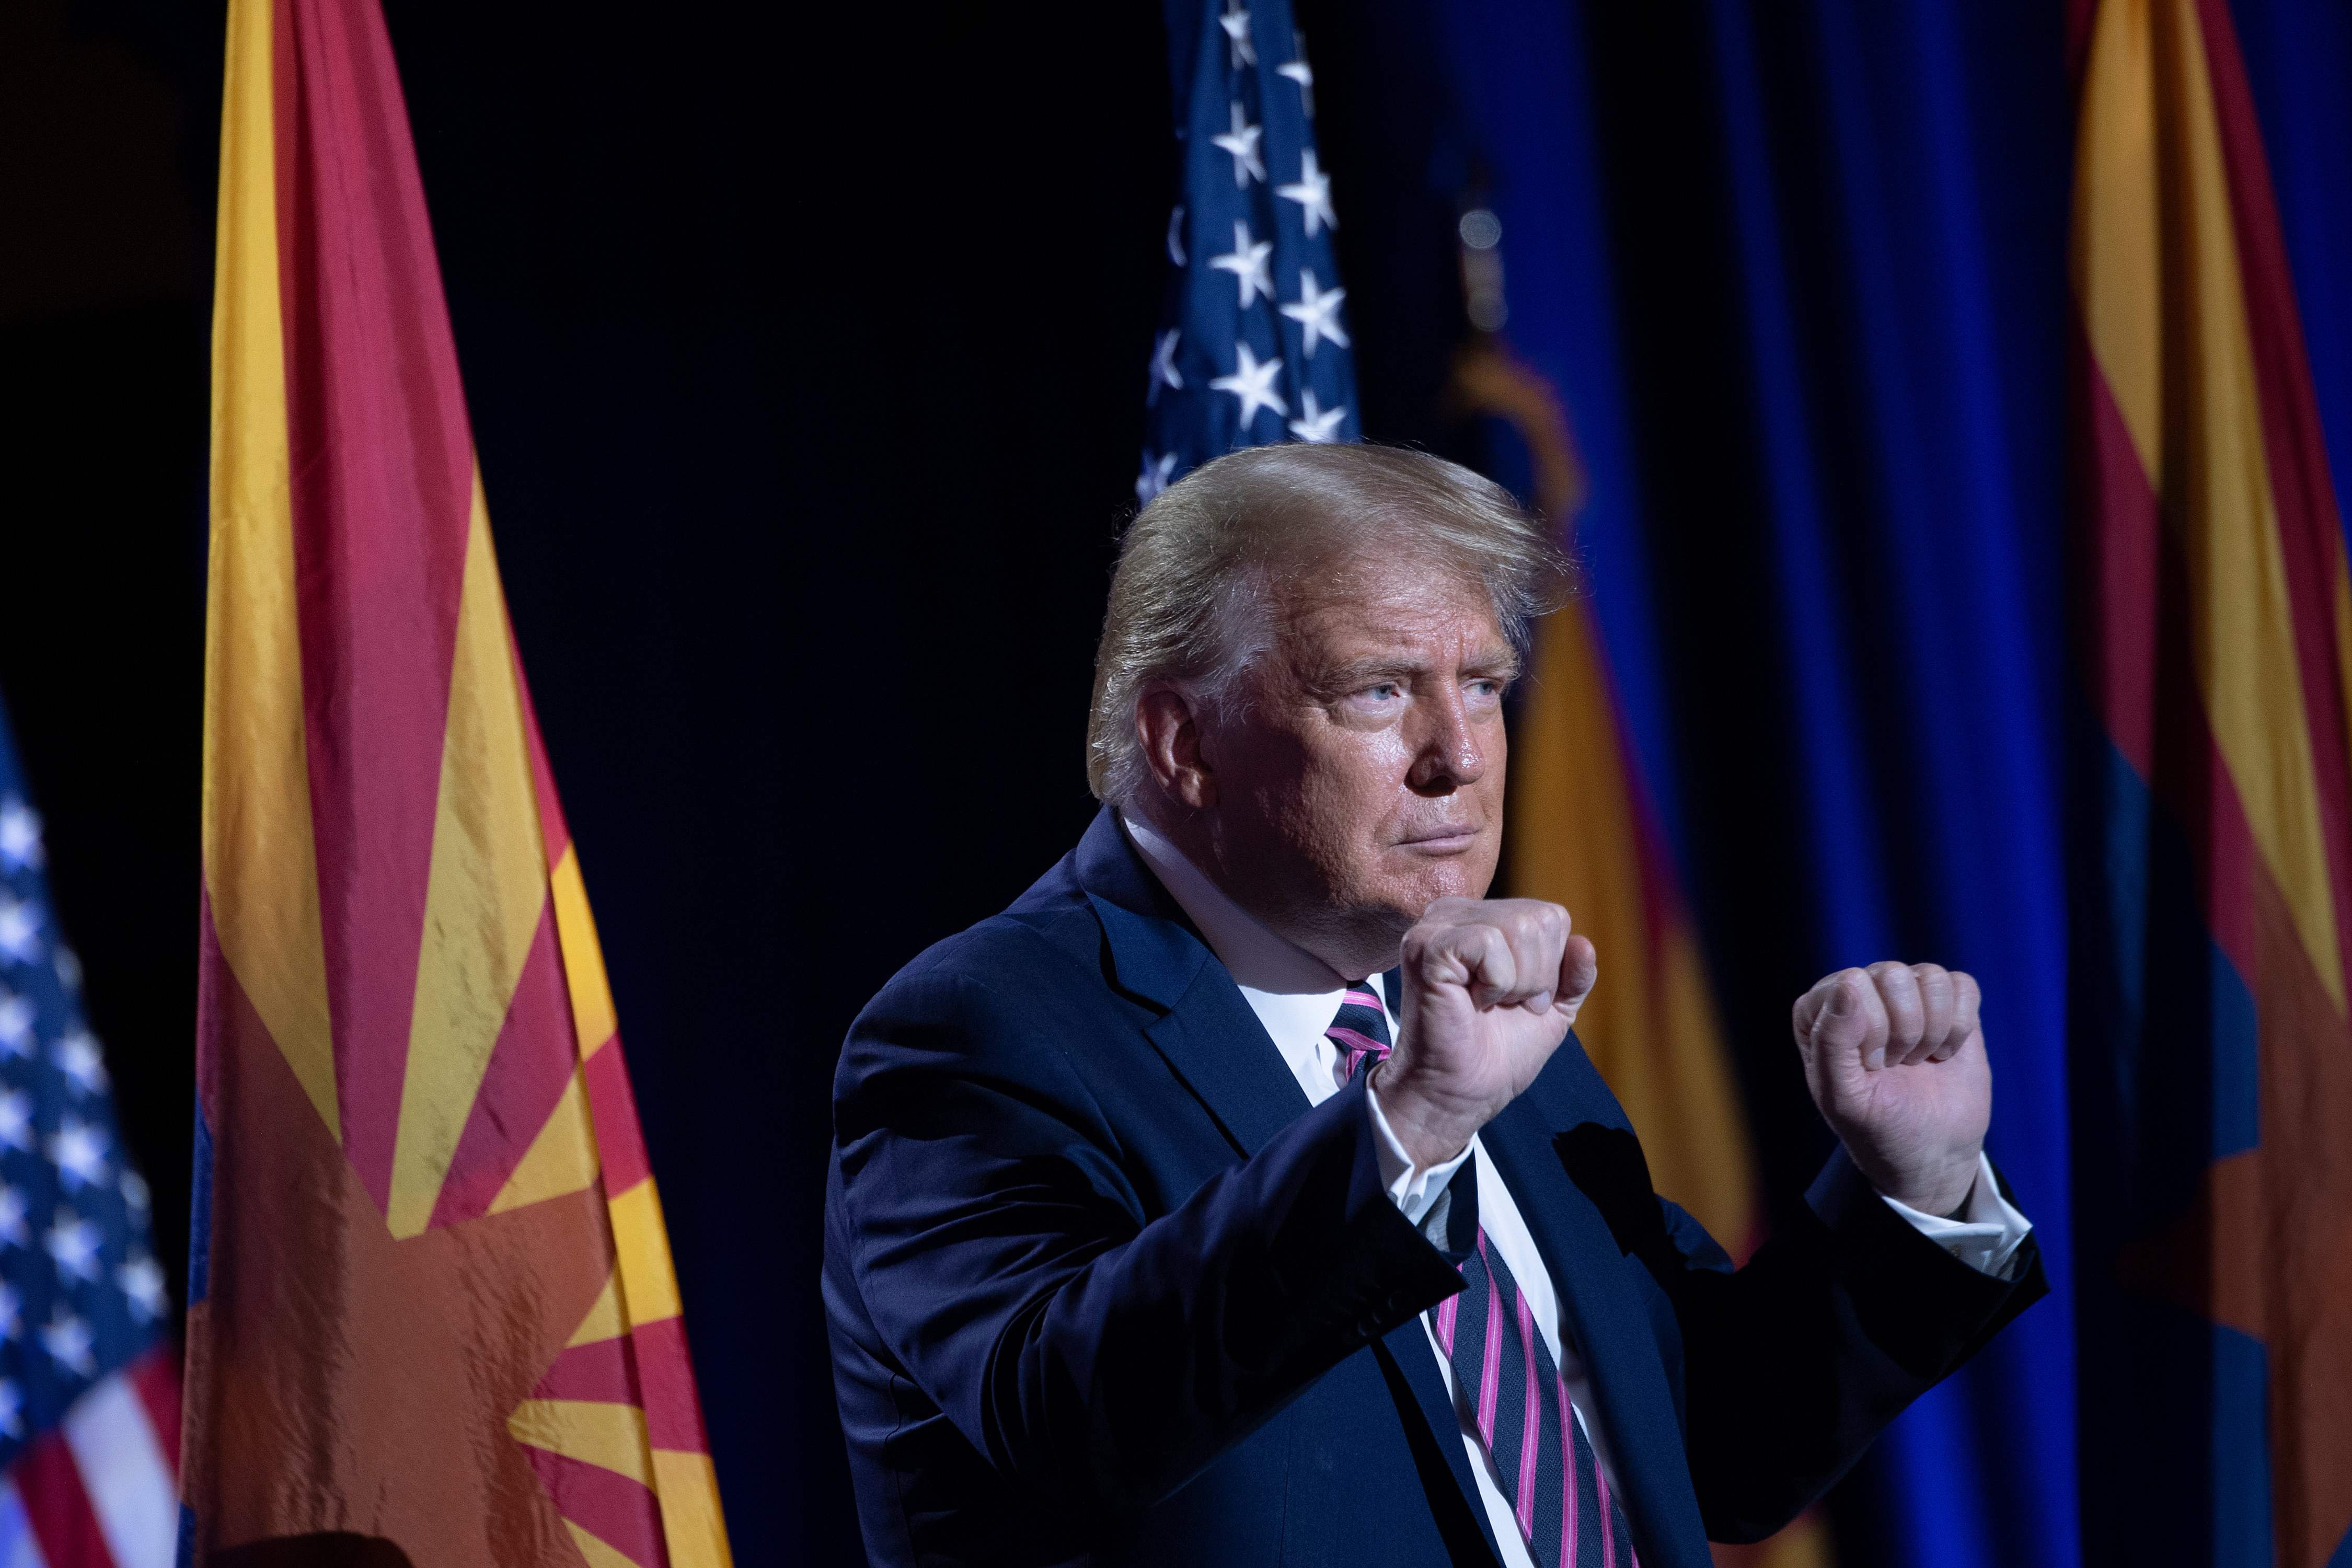 El presidente Donald Trump baila después de hablar sobre los latinos, en Arizona. (Foto Prensa Libre: AFP)